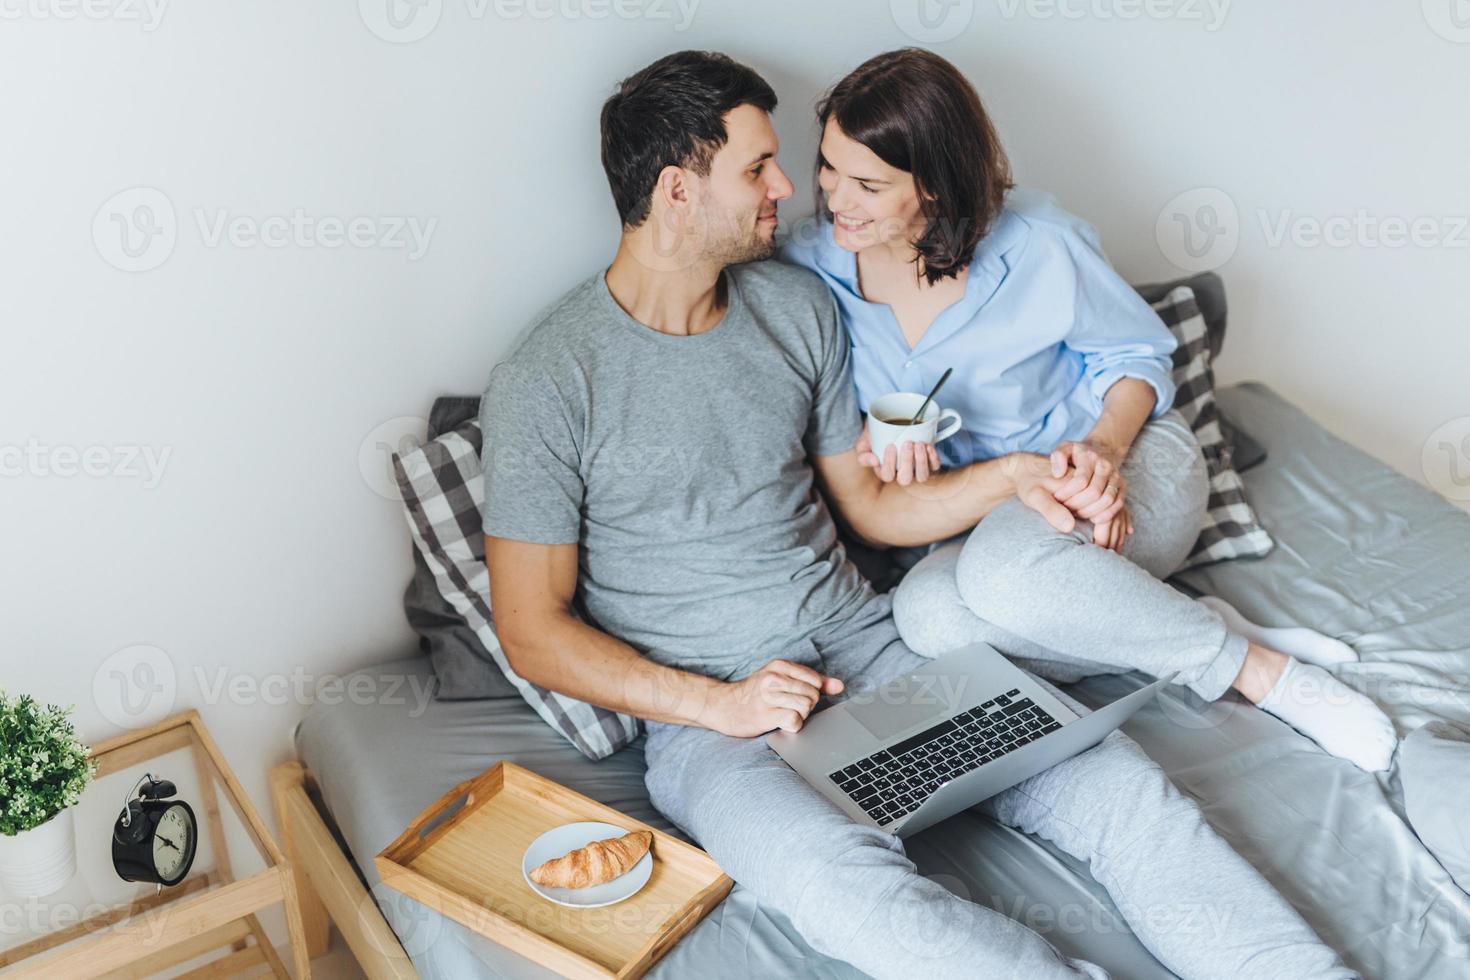 les femmes et les hommes affectueux se regardent avec beaucoup d'amour, profitent de la convivialité dans la chambre, ont de bonnes relations, utilisent un ordinateur portable pour se divertir, boivent du thé avec un croissant photo